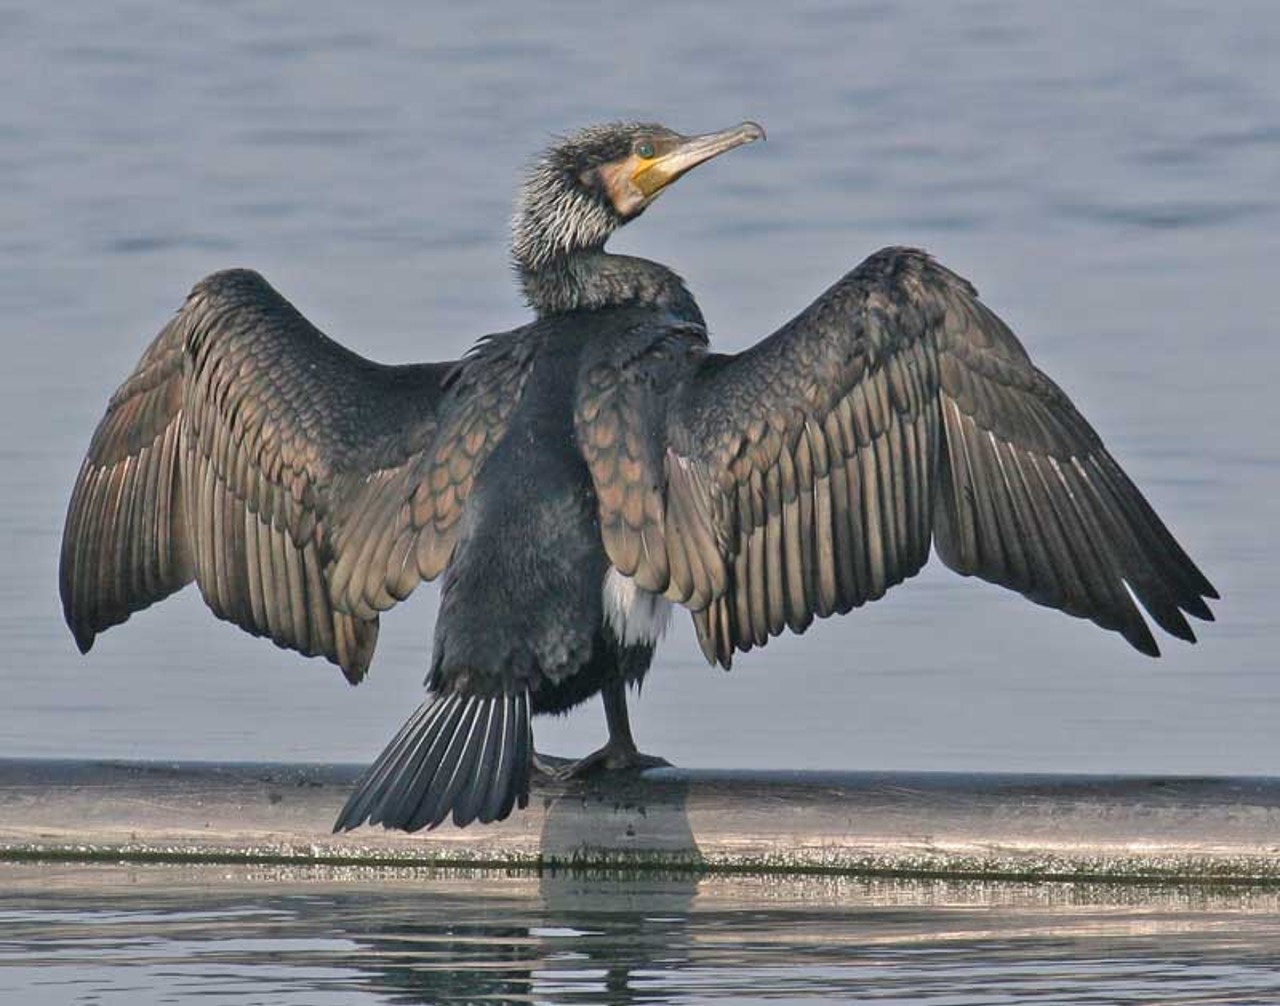 Ein Kormoran spannt, auf einem im Wasser schwimmenden Balken stehend, seine Flügel aus